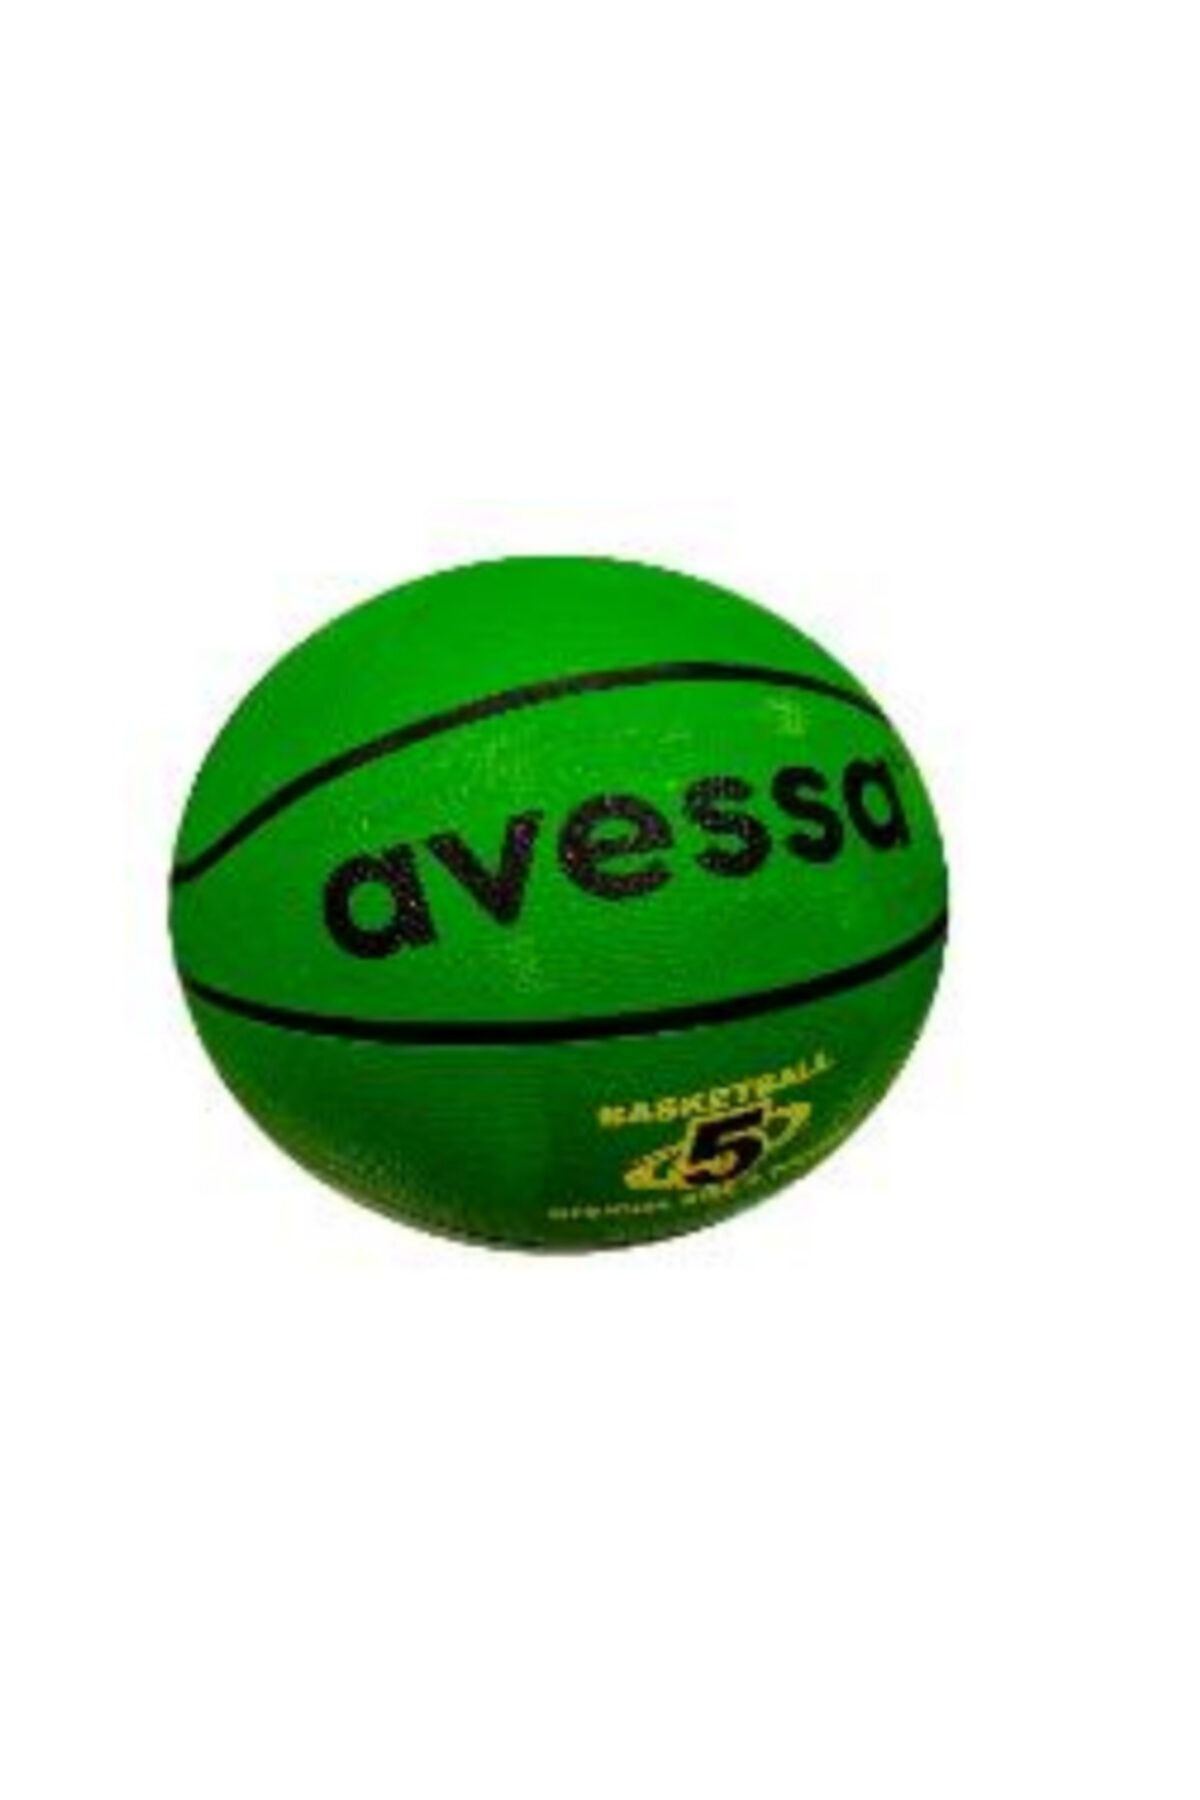 Avessa Yeşil Baketbol Topu No5